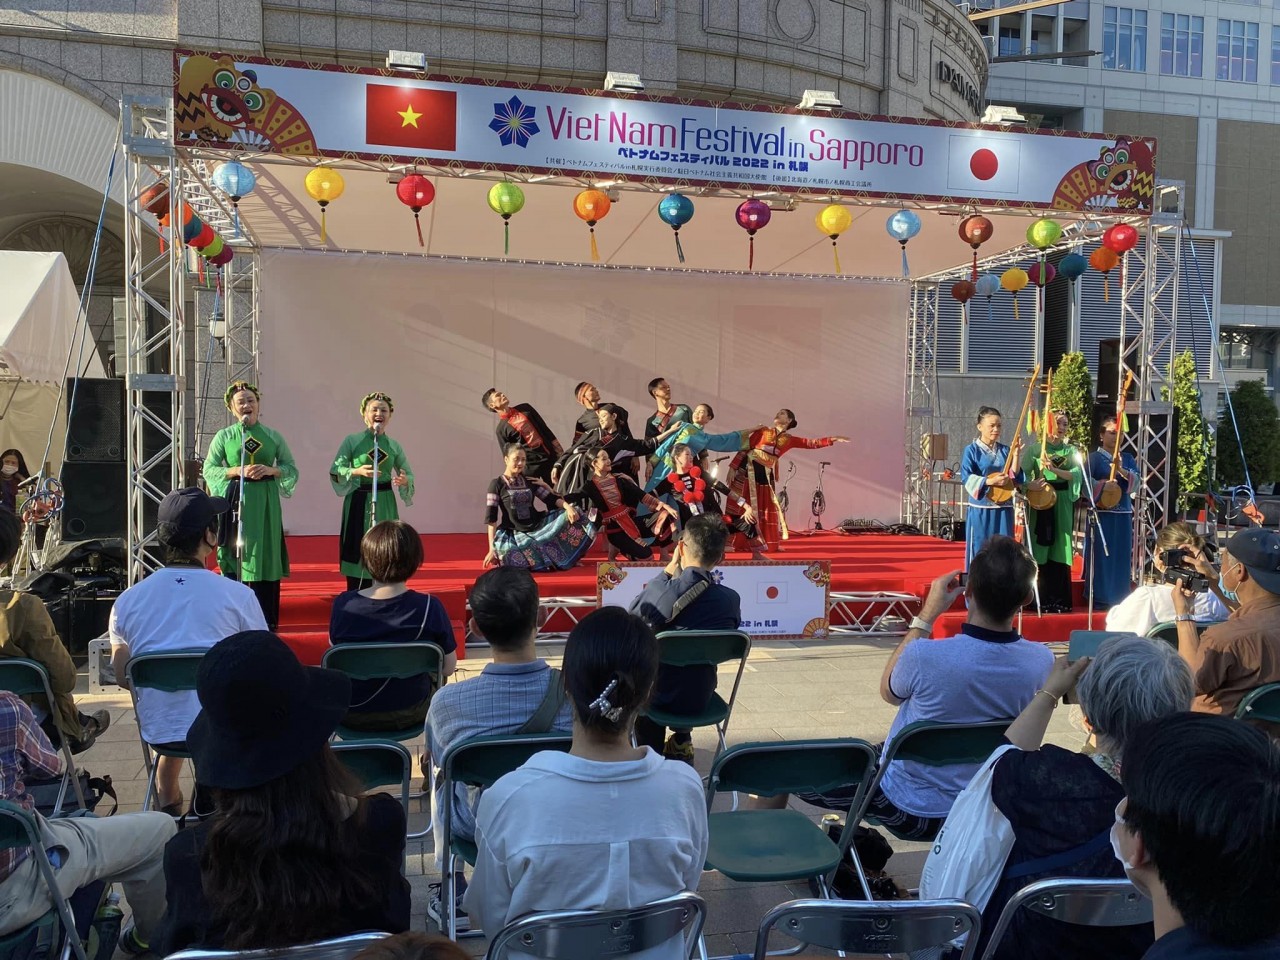 Những sắc màu rực rỡ tại Lễ hội Việt Nam tại Sapporo 2022